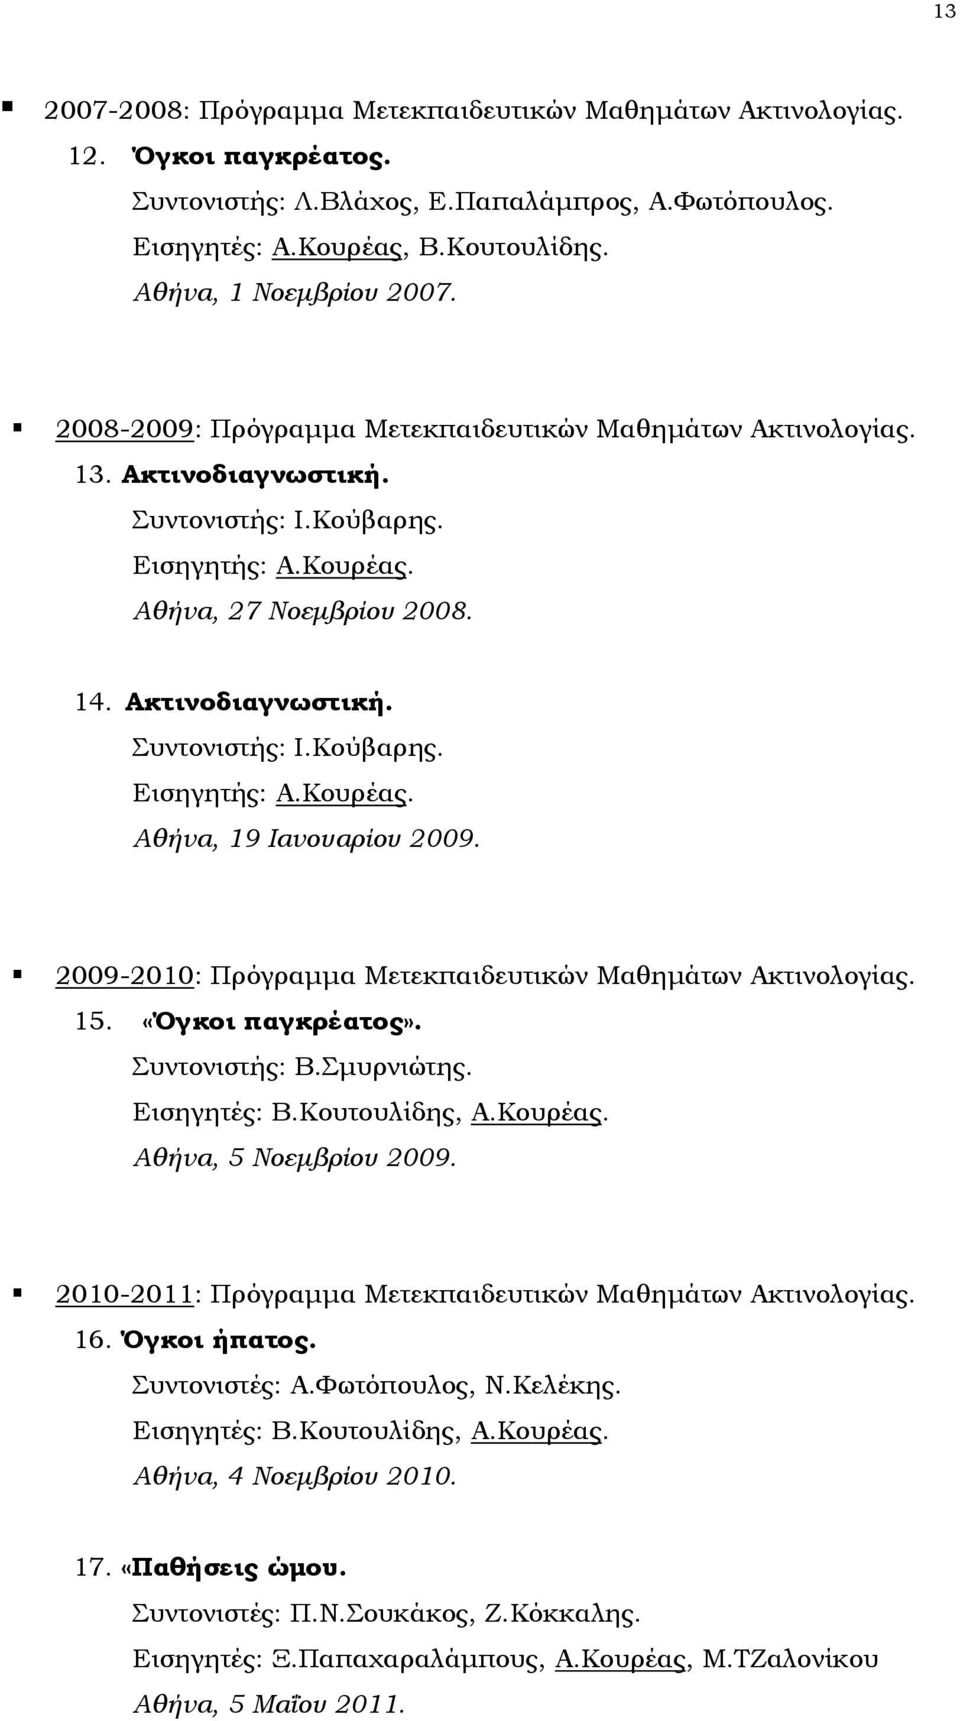 2009-2010: Πρόγραμμα Μετεκπαιδευτικών Μαθημάτων Ακτινολογίας. 15. «Όγκοι παγκρέατος». Συντονιστής: Β.Σμυρνιώτης. Εισηγητές: Β.Κουτουλίδης, Α.Κουρέας. Αθήνα, 5 Νοεμβρίου 2009.